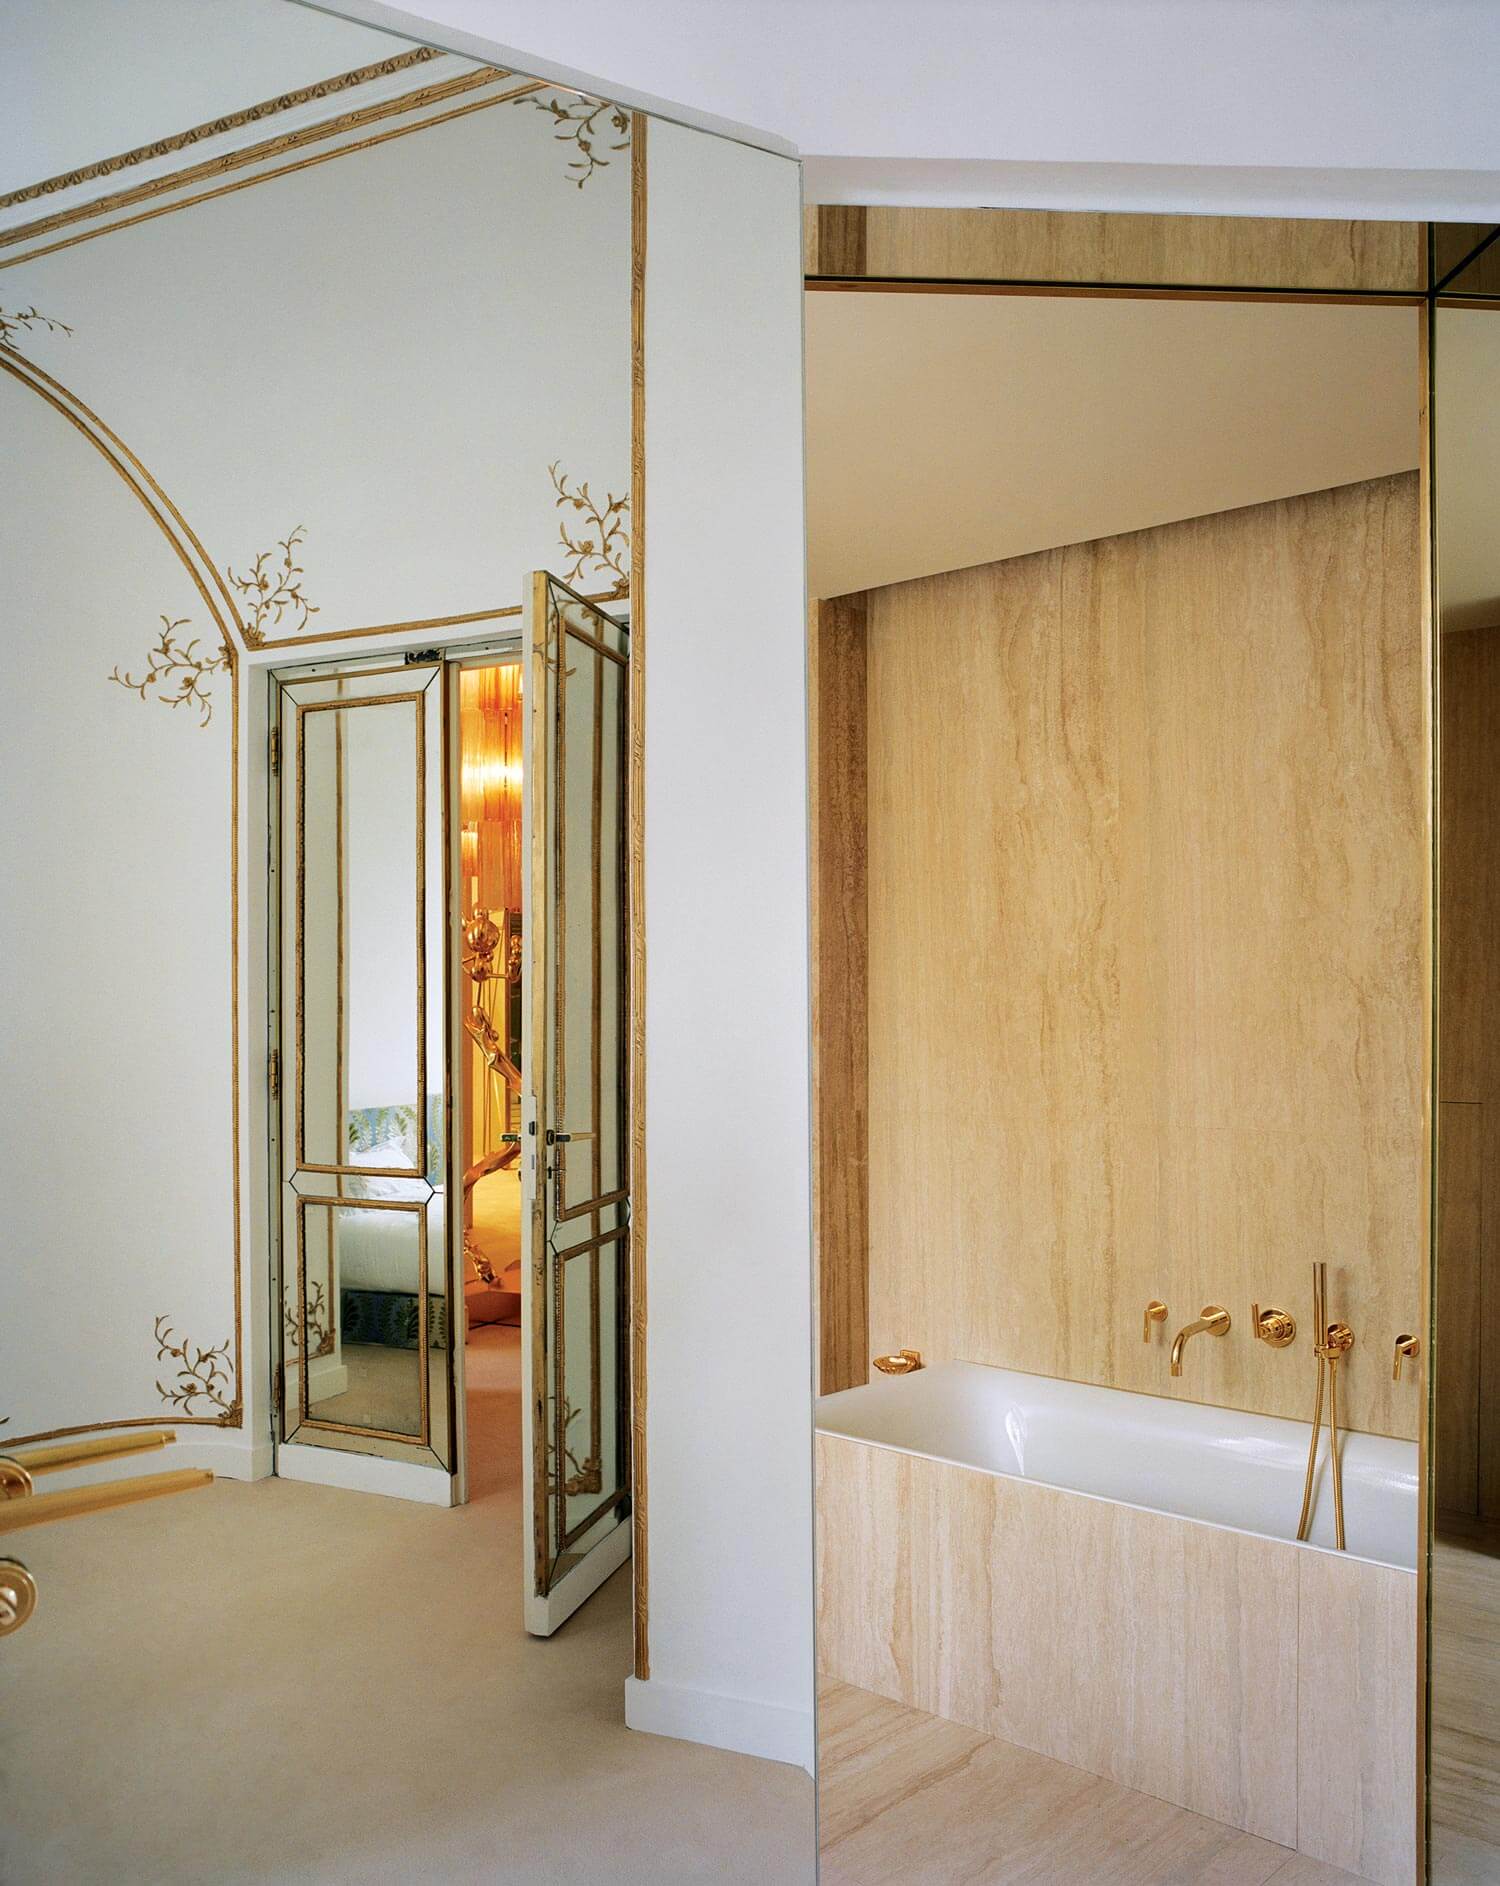 Bathroom in Paris Apartment designed by Jansen